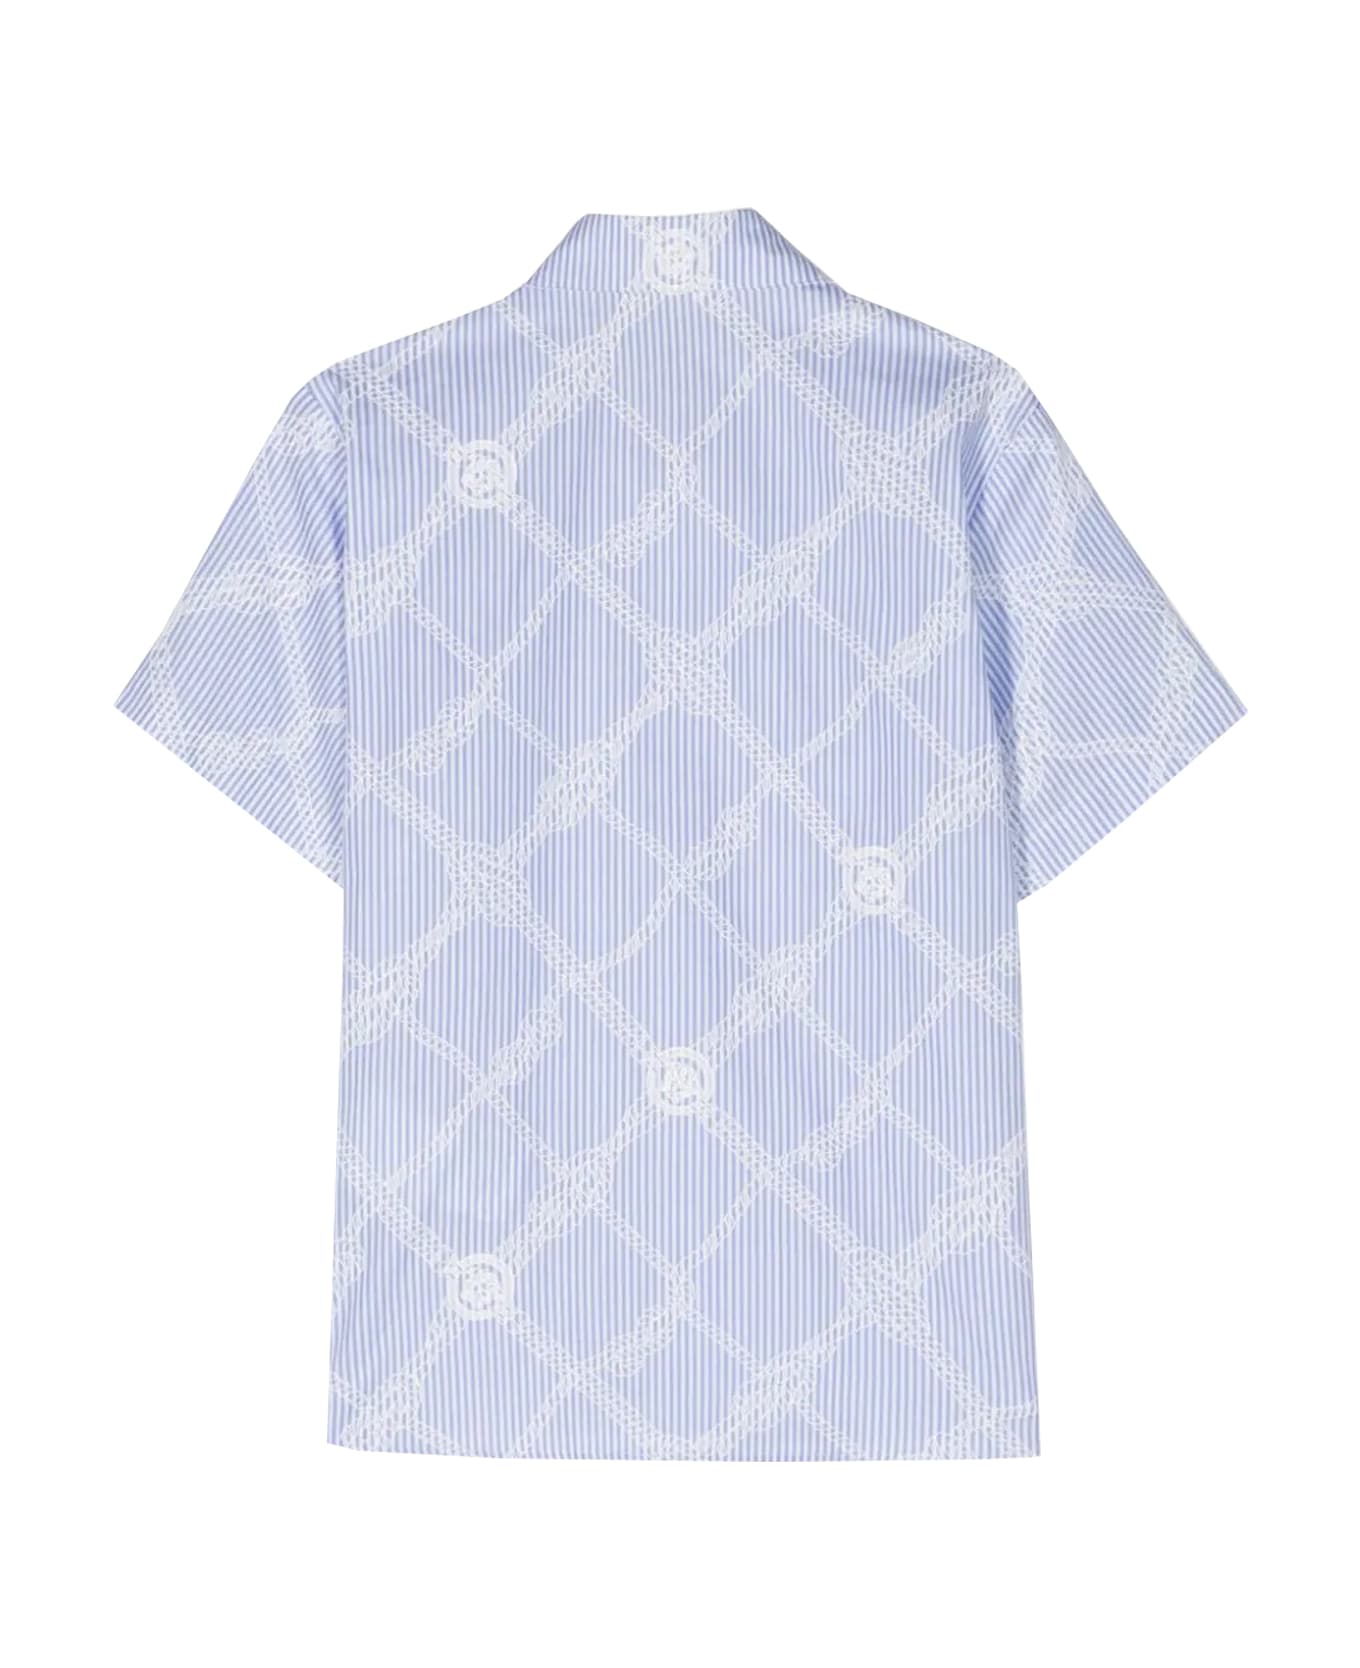 Versace Nautical Medusa Shirt - Light blue シャツ